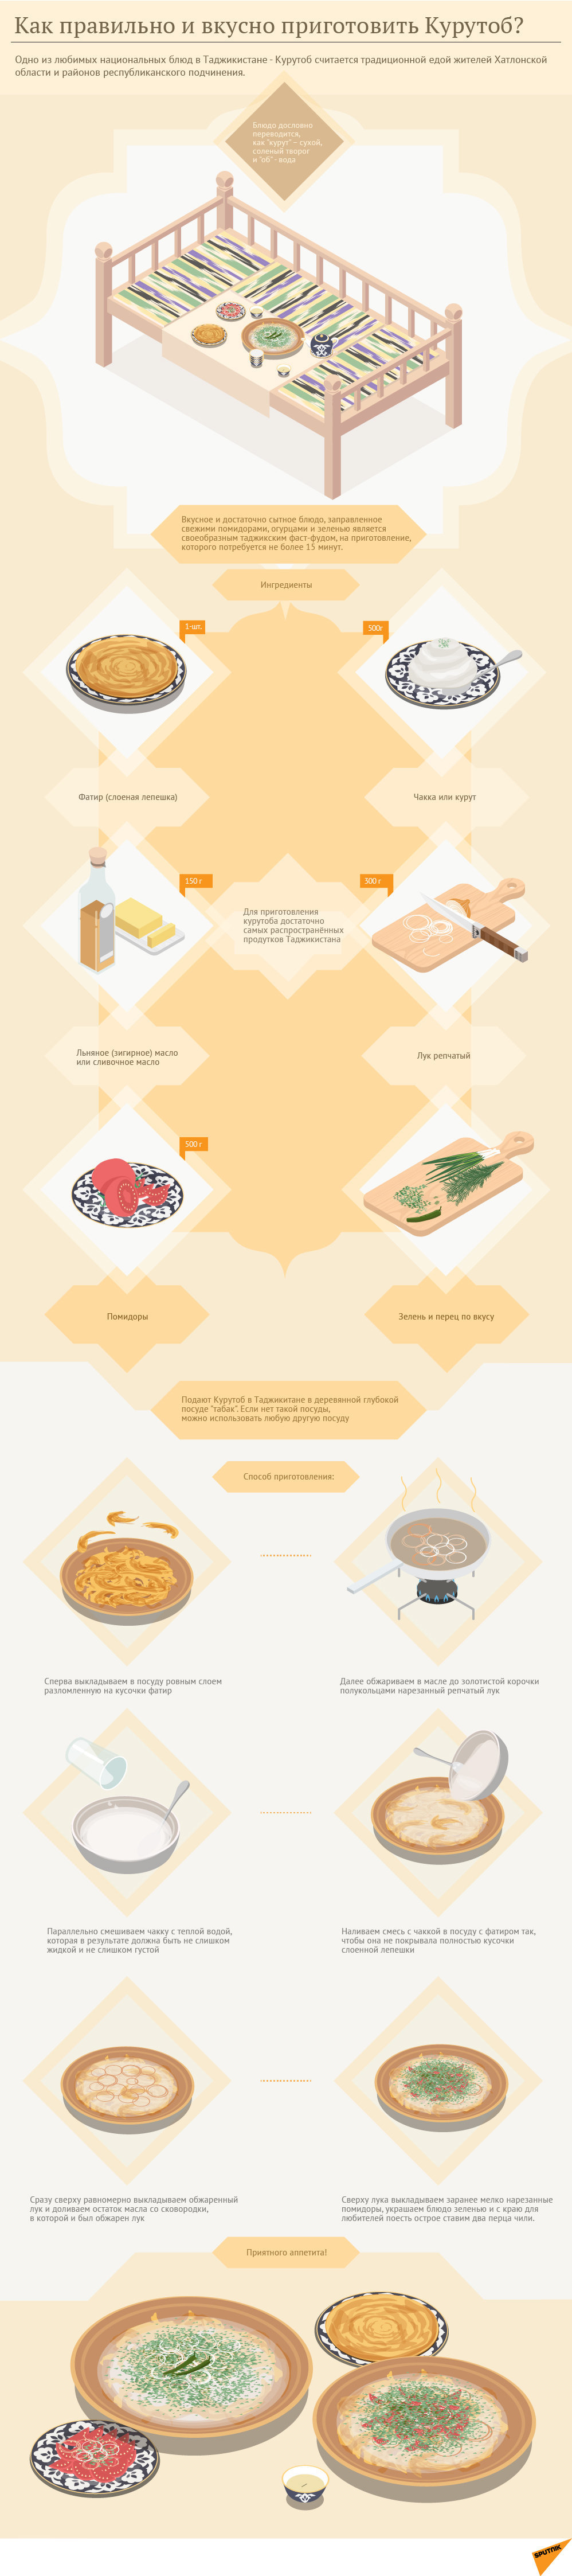 Как правильно приготовить курутоб. Инфографика - Sputnik Таджикистан